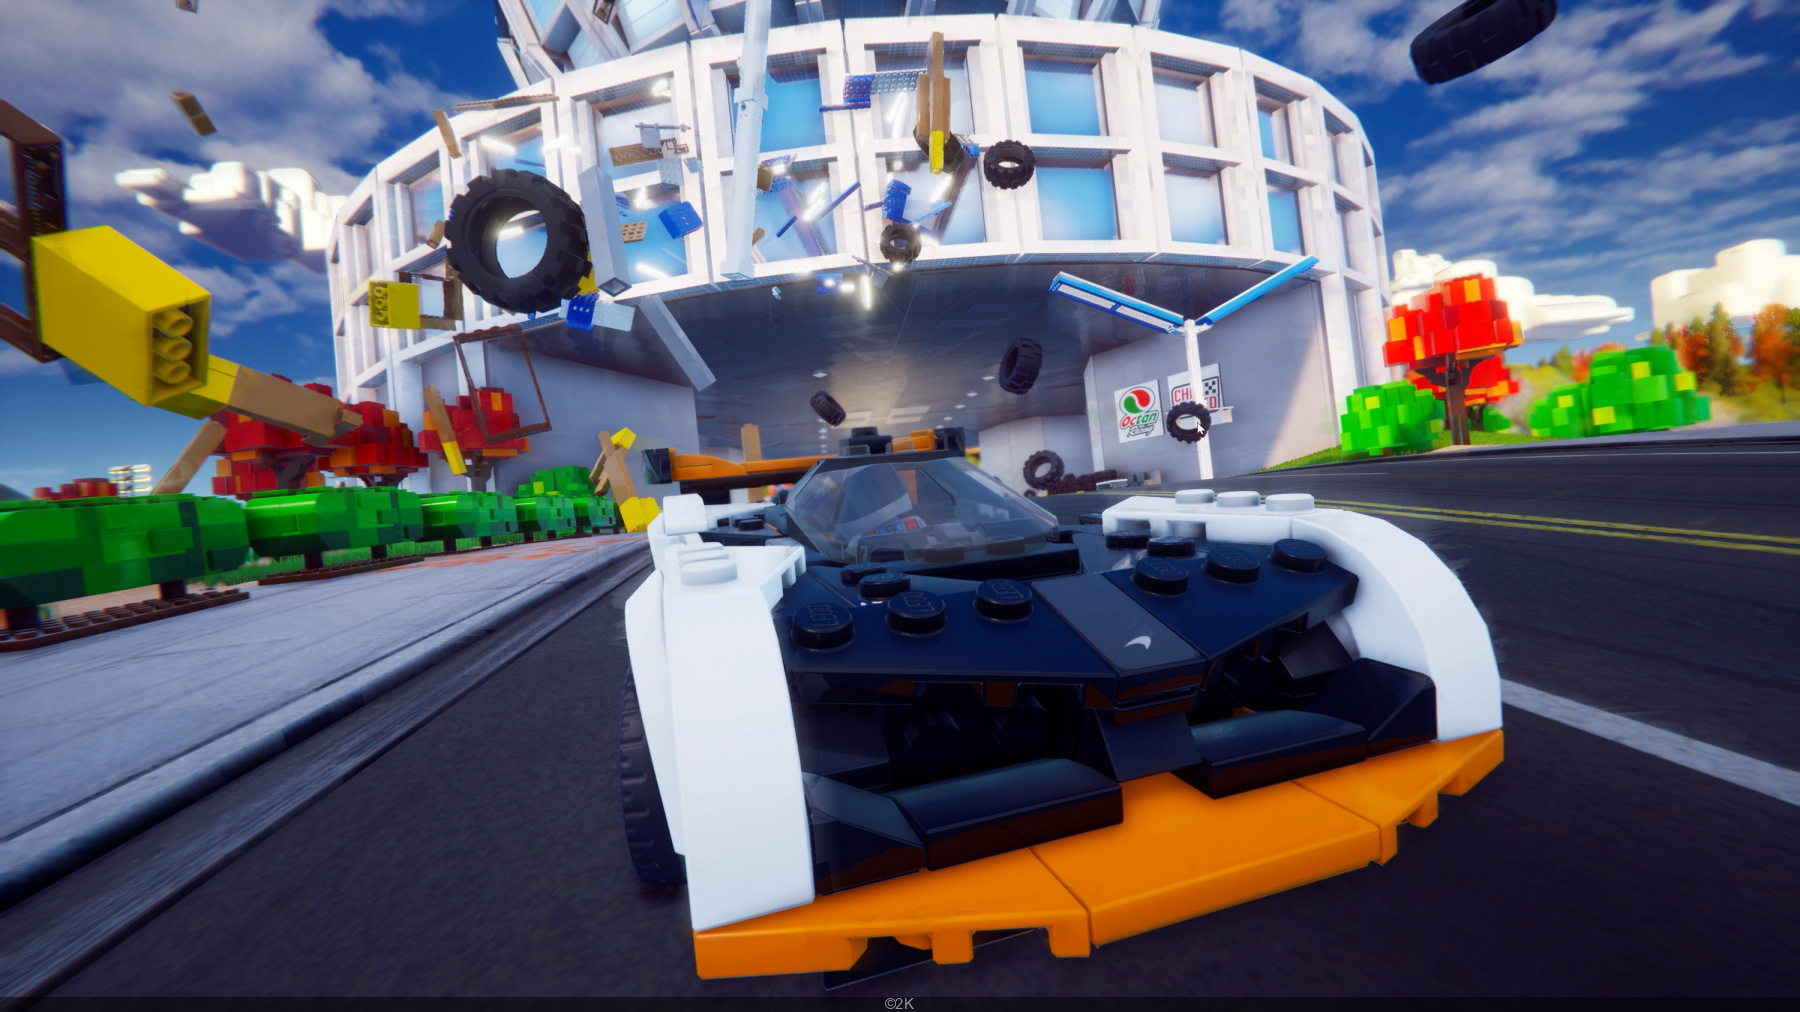 Jogue LEGO 2K Drive gratuitamente em dezembro com PlayStation Plus